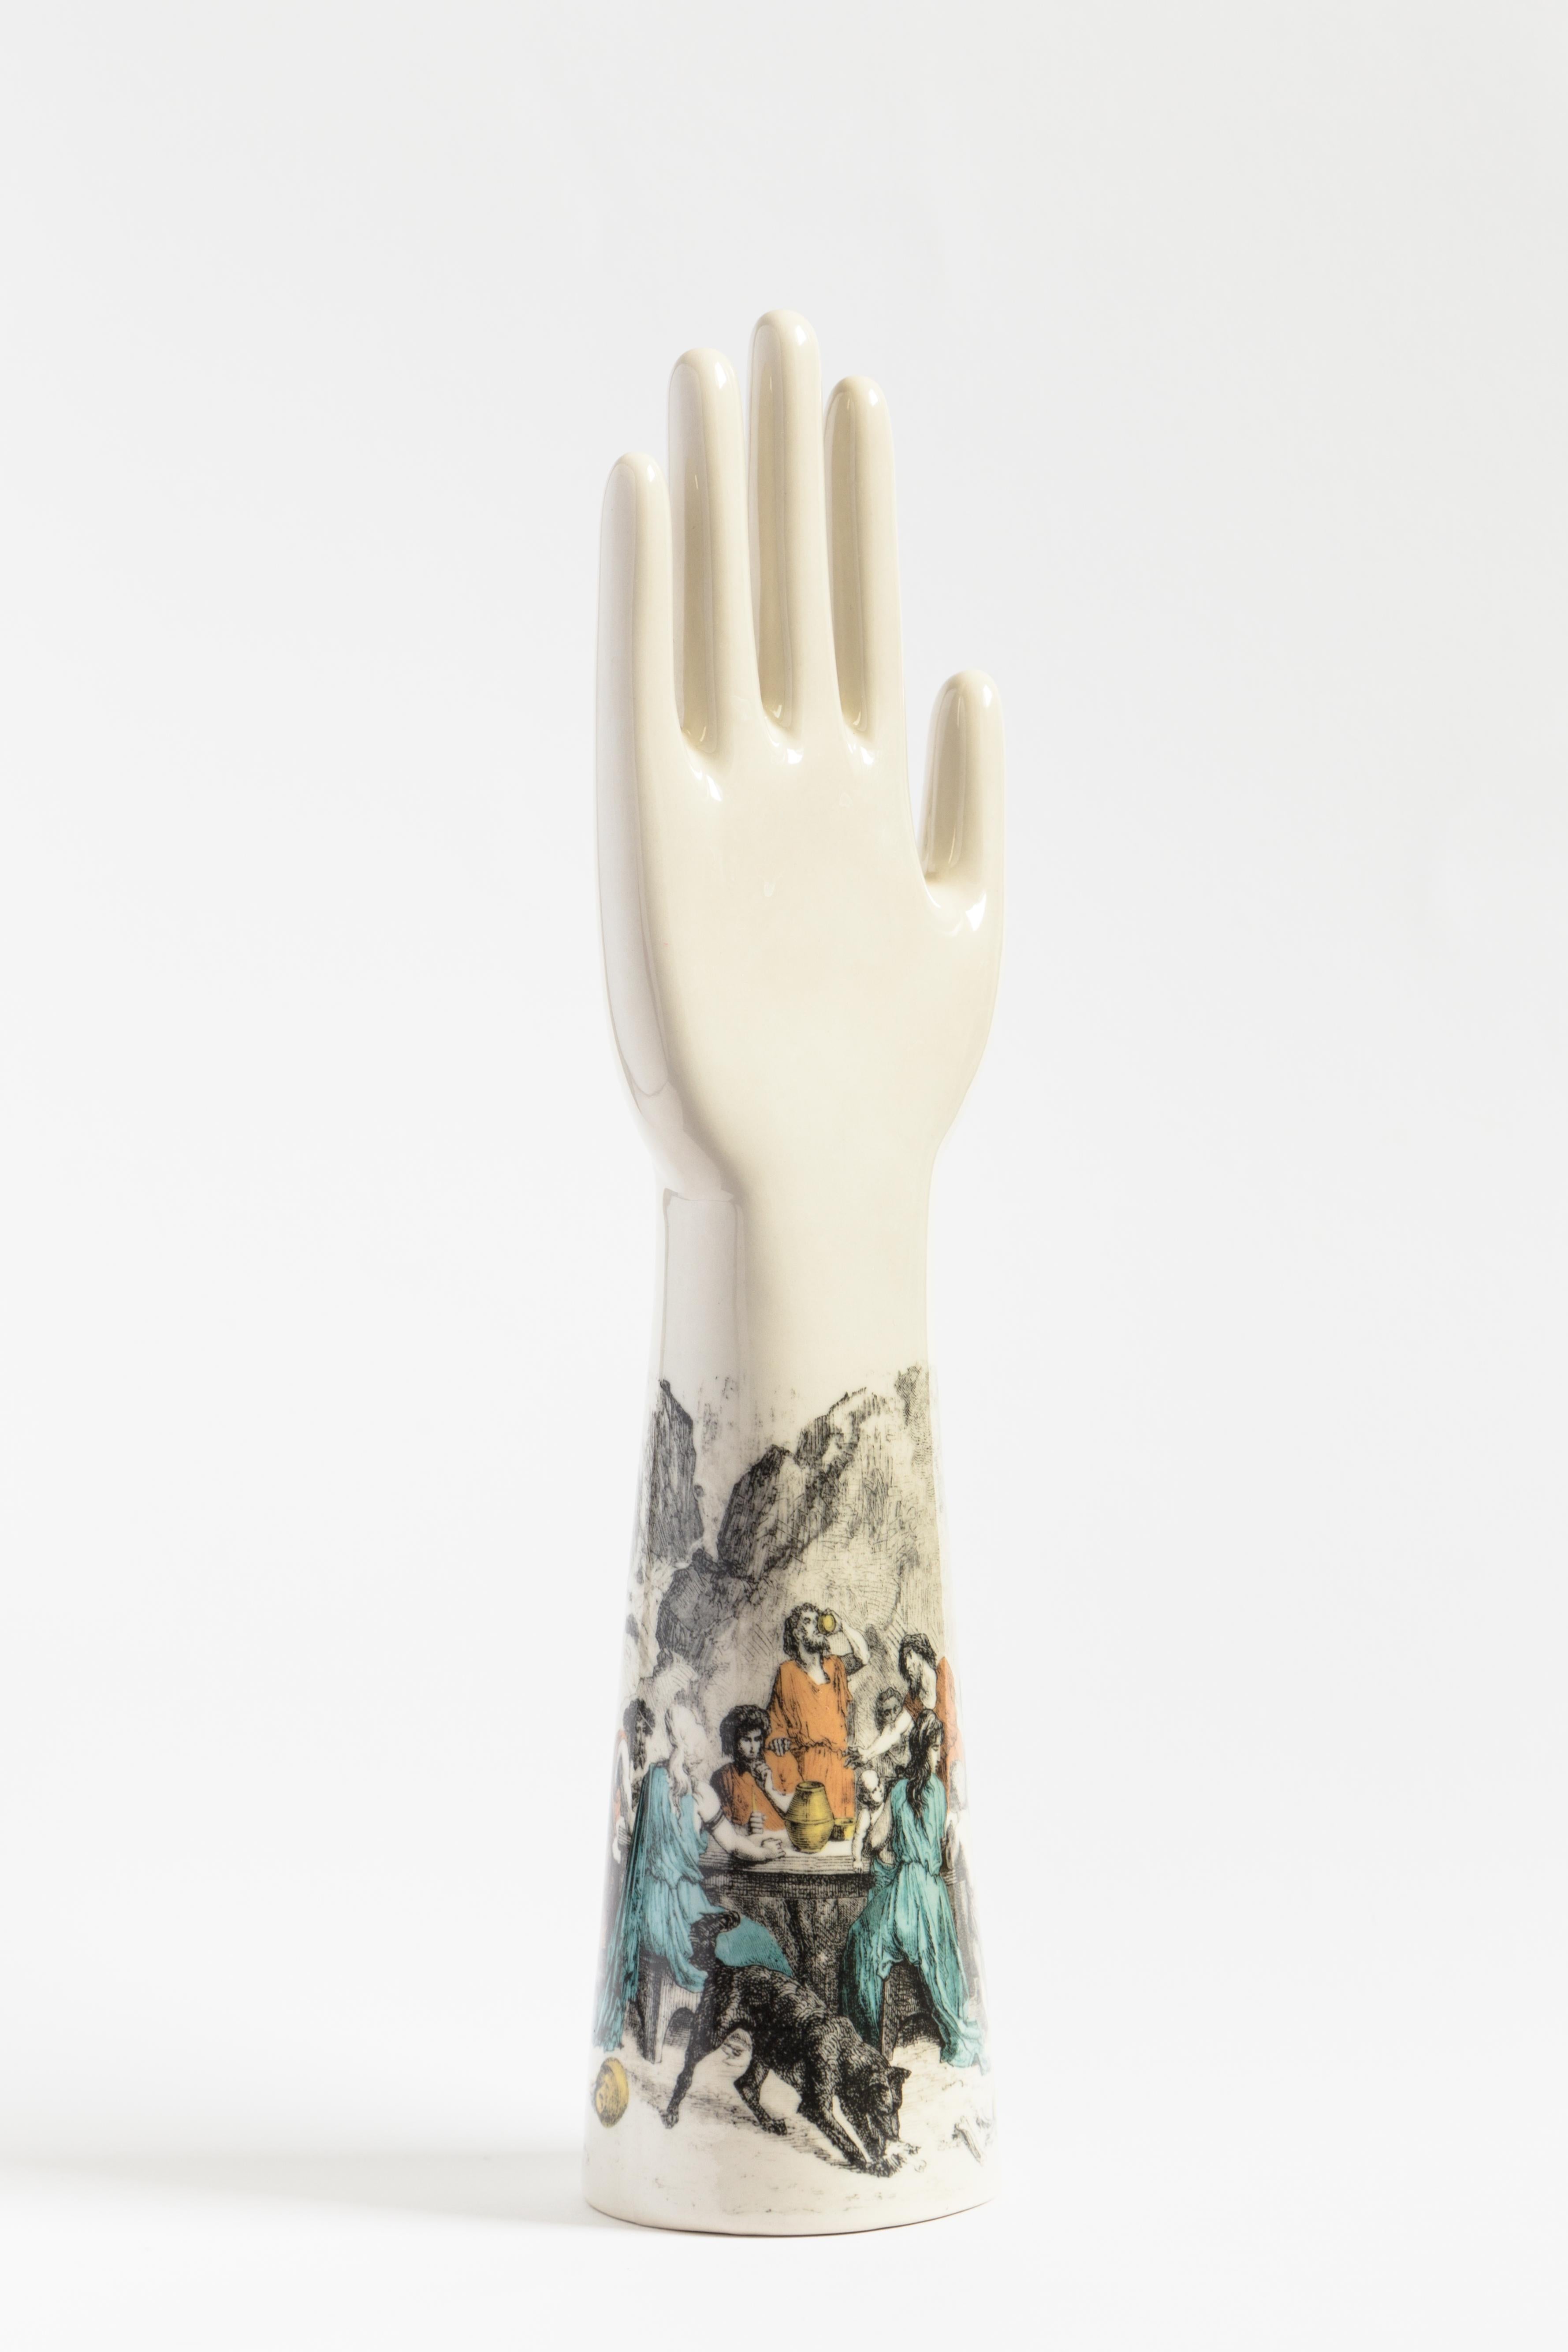 Cette sculpture saisissante fait partie de la série Anatomica de Vito Nesta, qui présente des objets décoratifs aux formes anatomiques simples et essentielles, caractérisés par des couleurs audacieuses et contrastées et un style moderne. Réalisée en